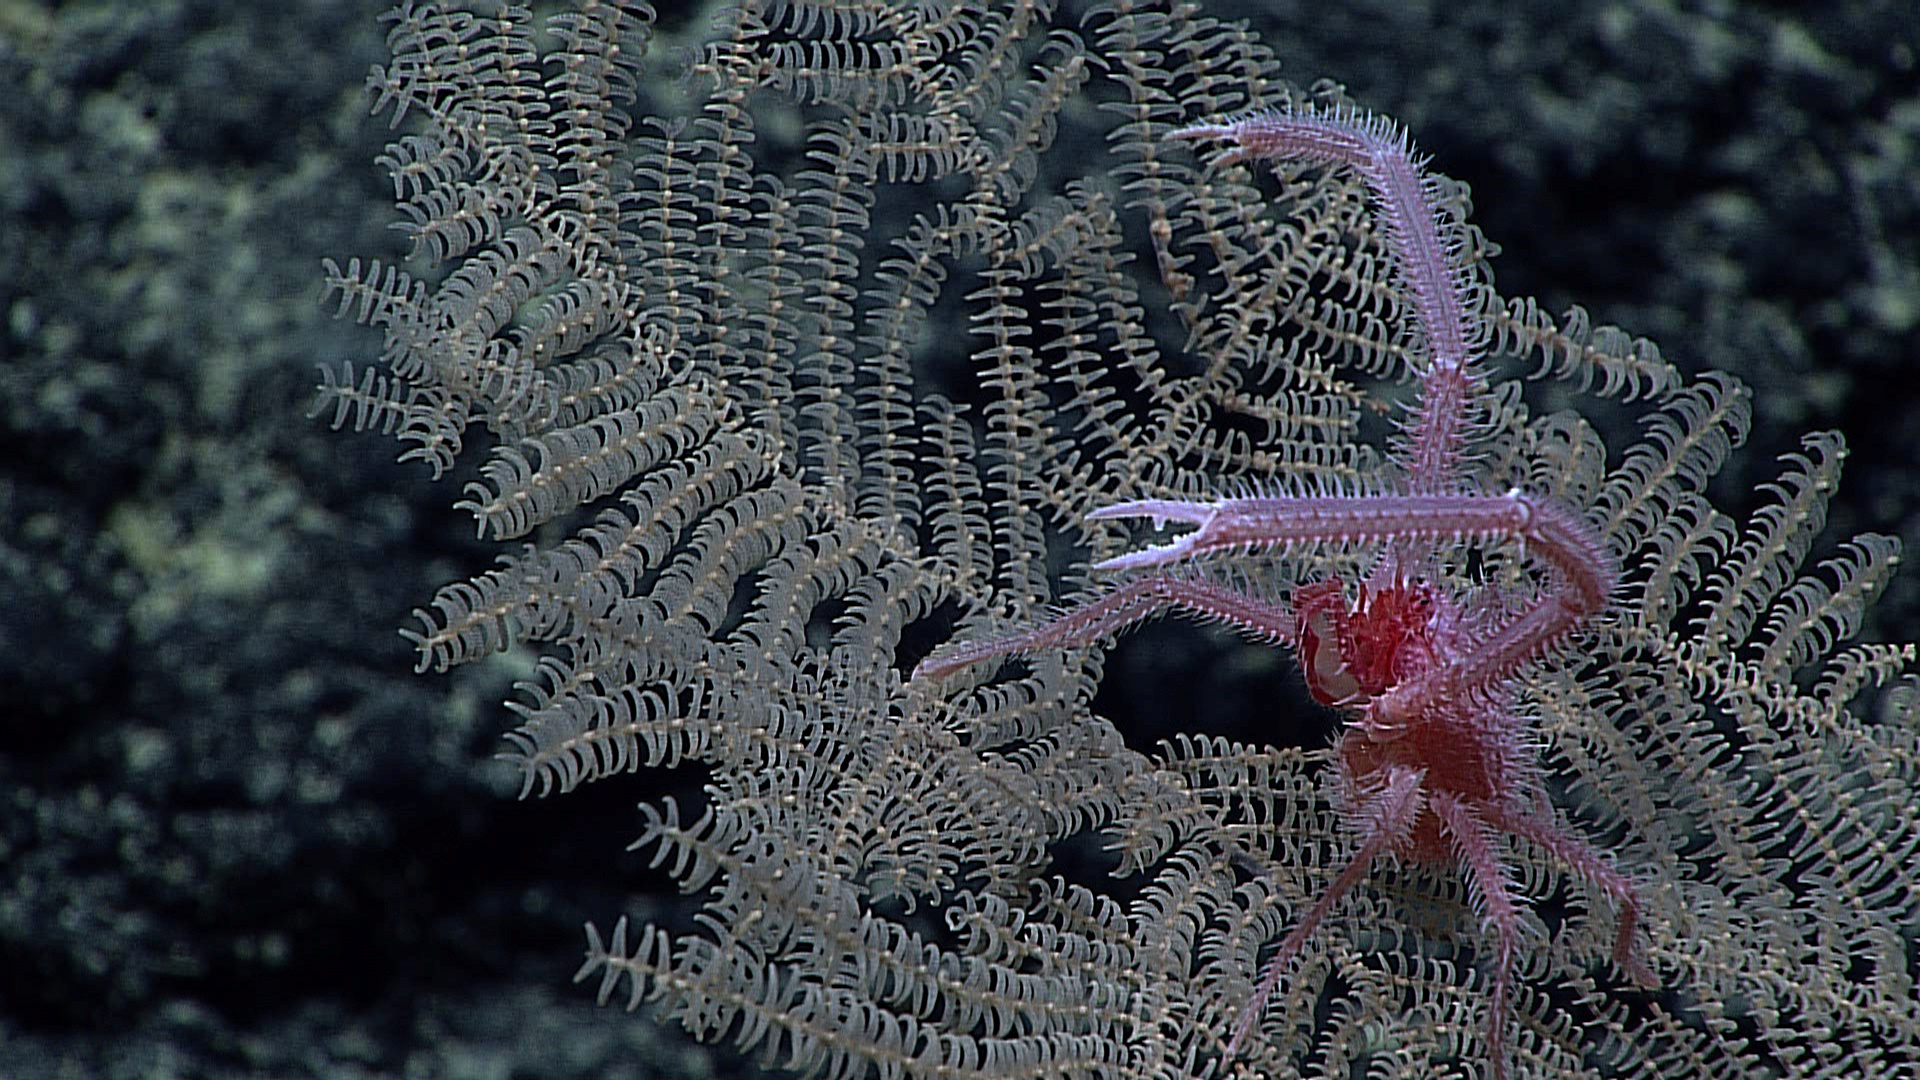 Coral 7. Черный коралл. Черный коралл фото. Коралл черный морской похож на ветку. Антипатарии или шипастые кораллы.